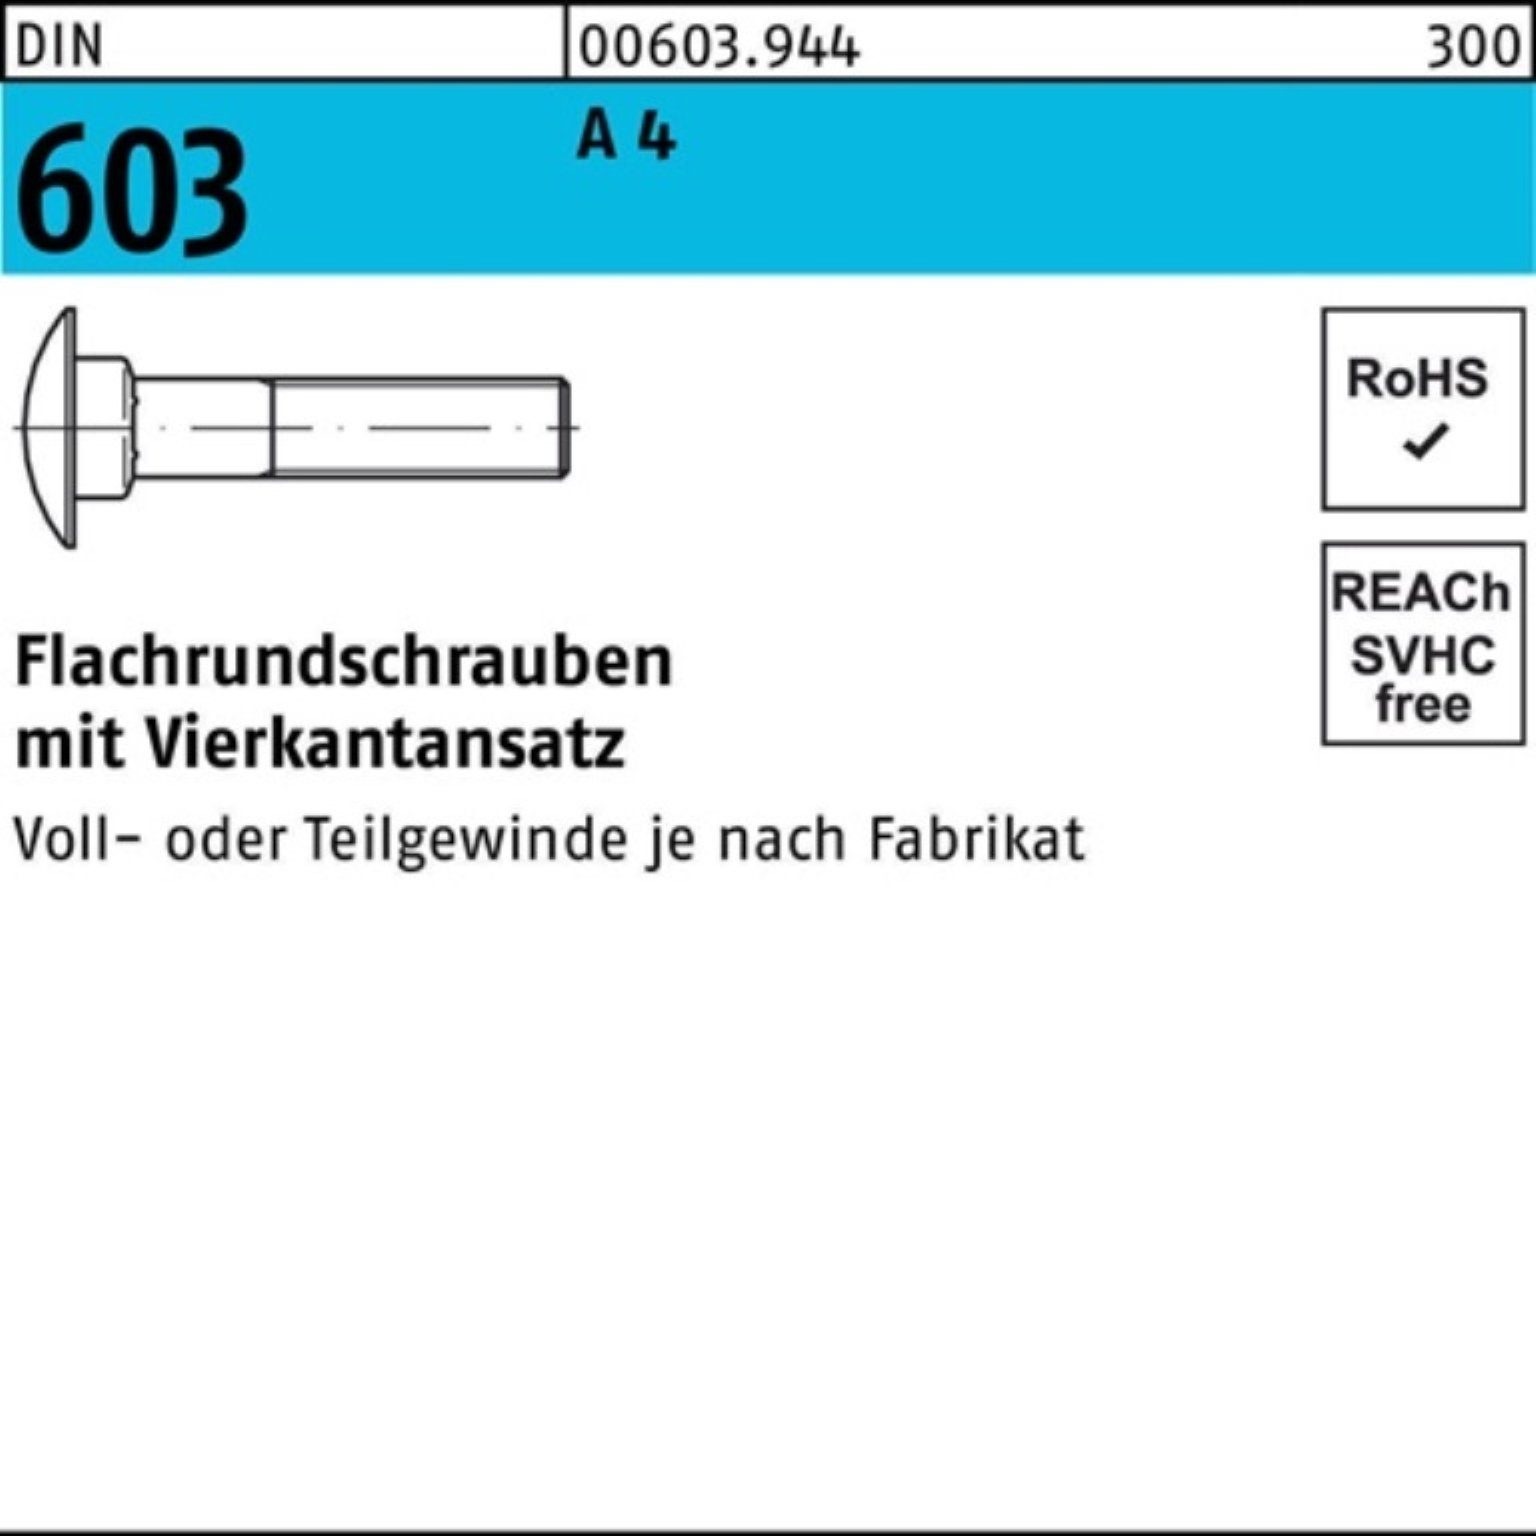 Reyher Schraube 100er Pack Flachrundschraube DIN 603 Vierkantansatz M10x 75 A 4 1 Stü